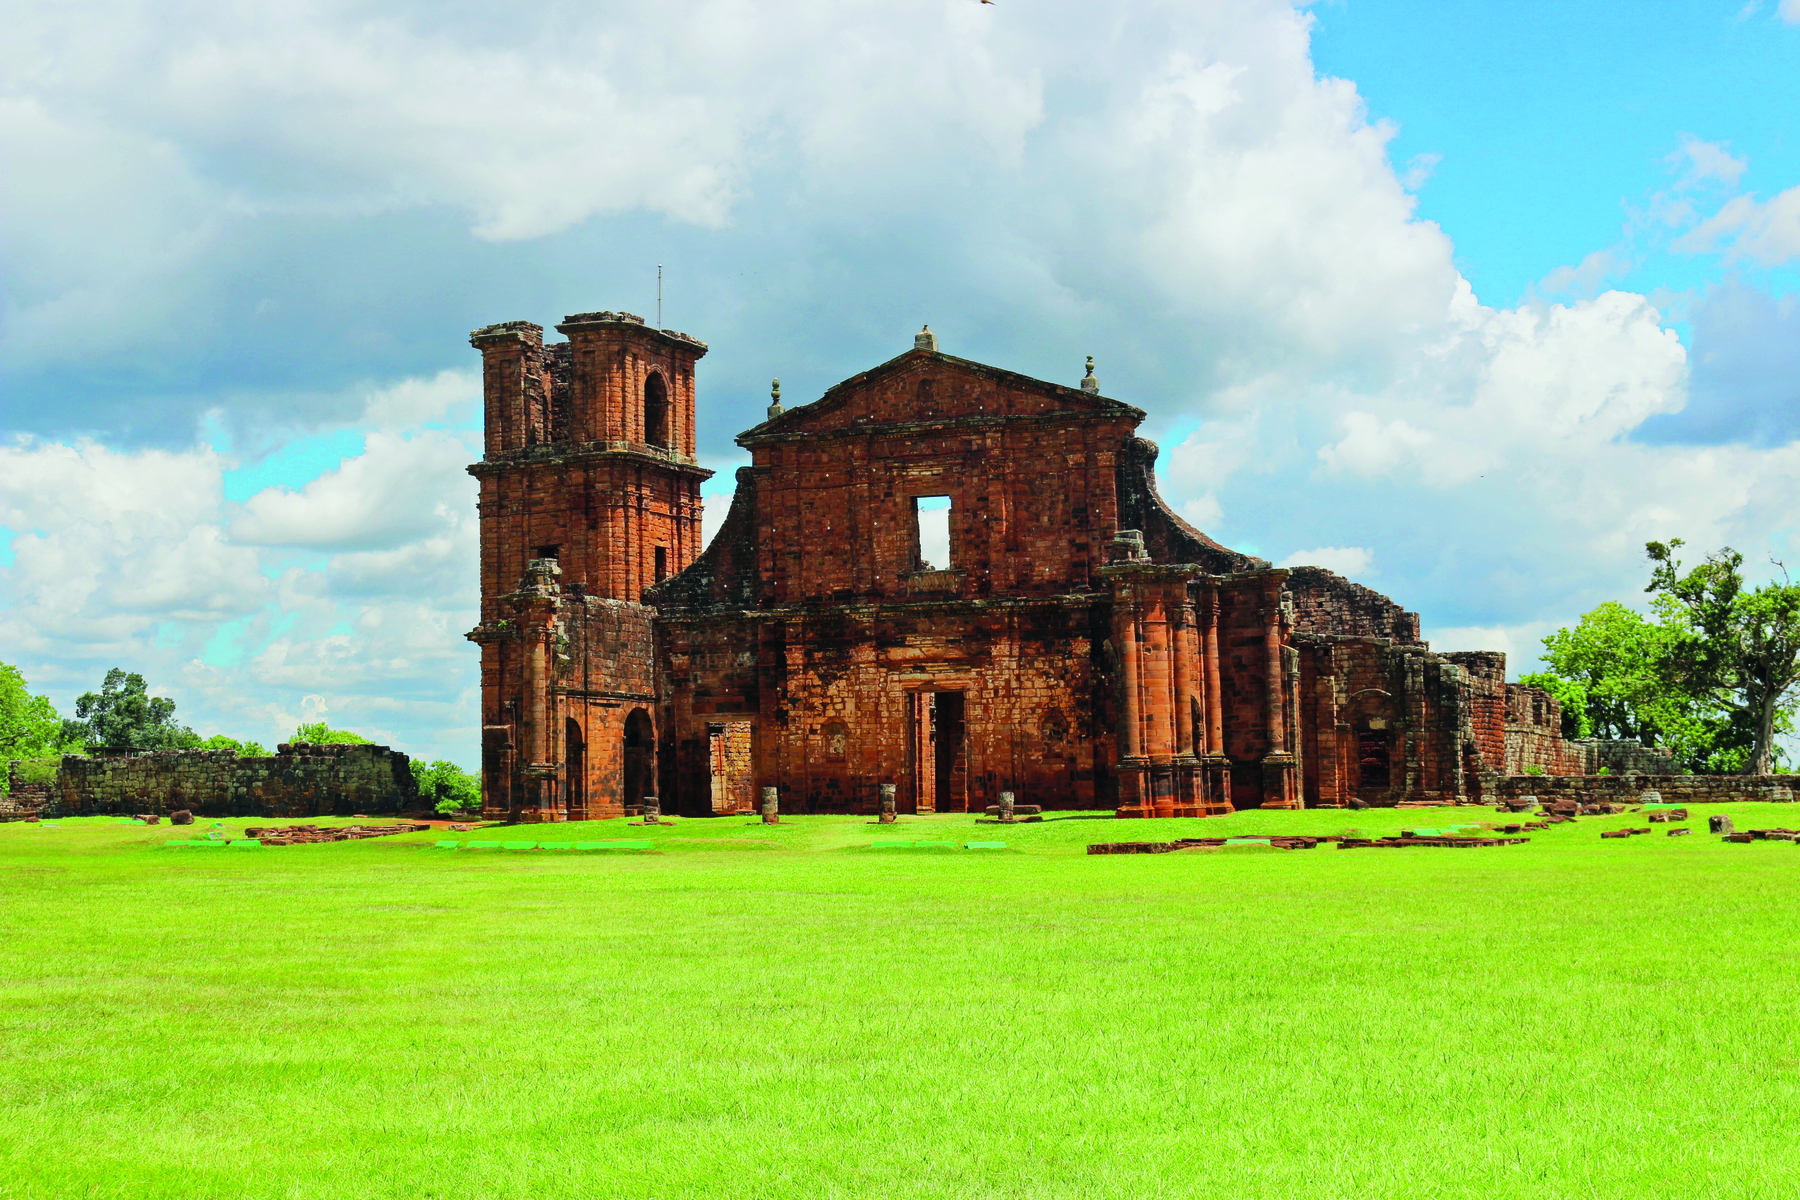 Fotografia. Vista da fachada de uma igreja em ruínas sobre um campo gramado, com paredes feitas em tijolos, uma torre lateral à esquerda, e uma porta central retangular.